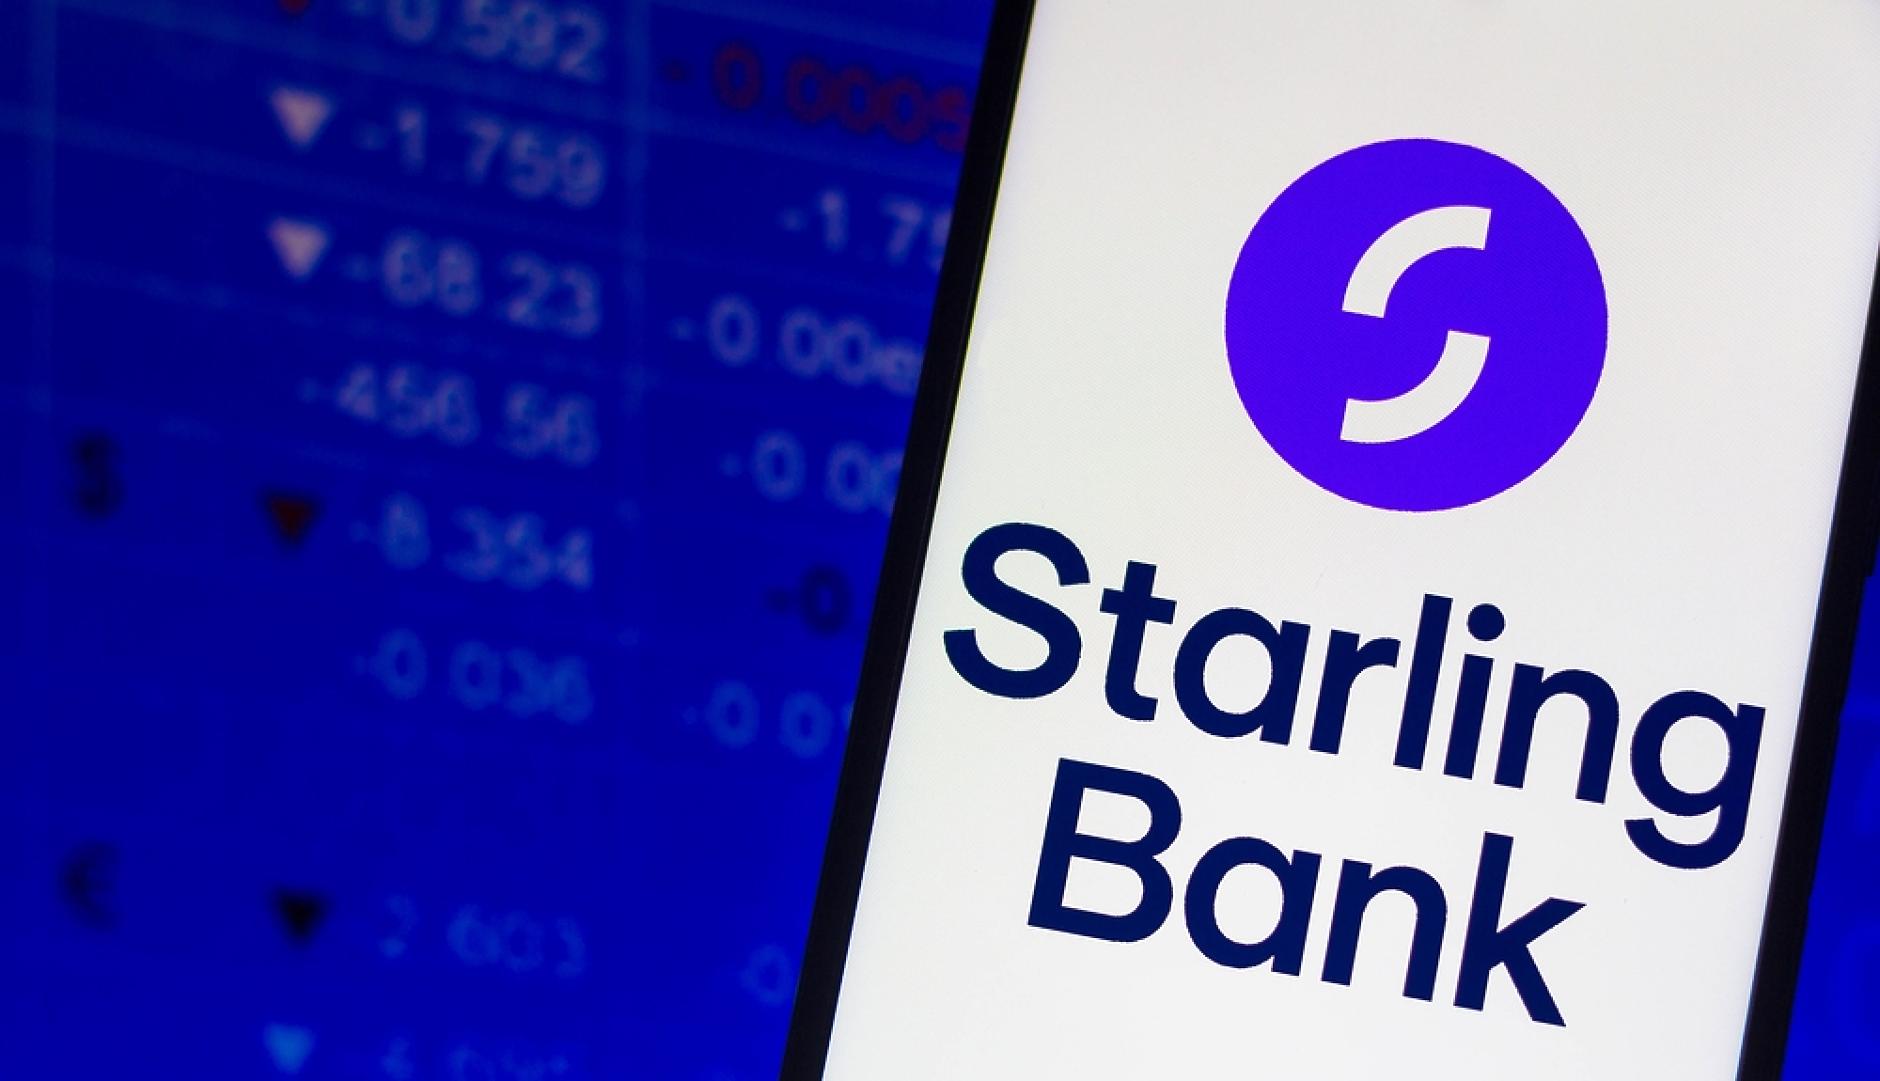 Основателката на цифровата банка Starling се оттегля от директорския пост в края на юни